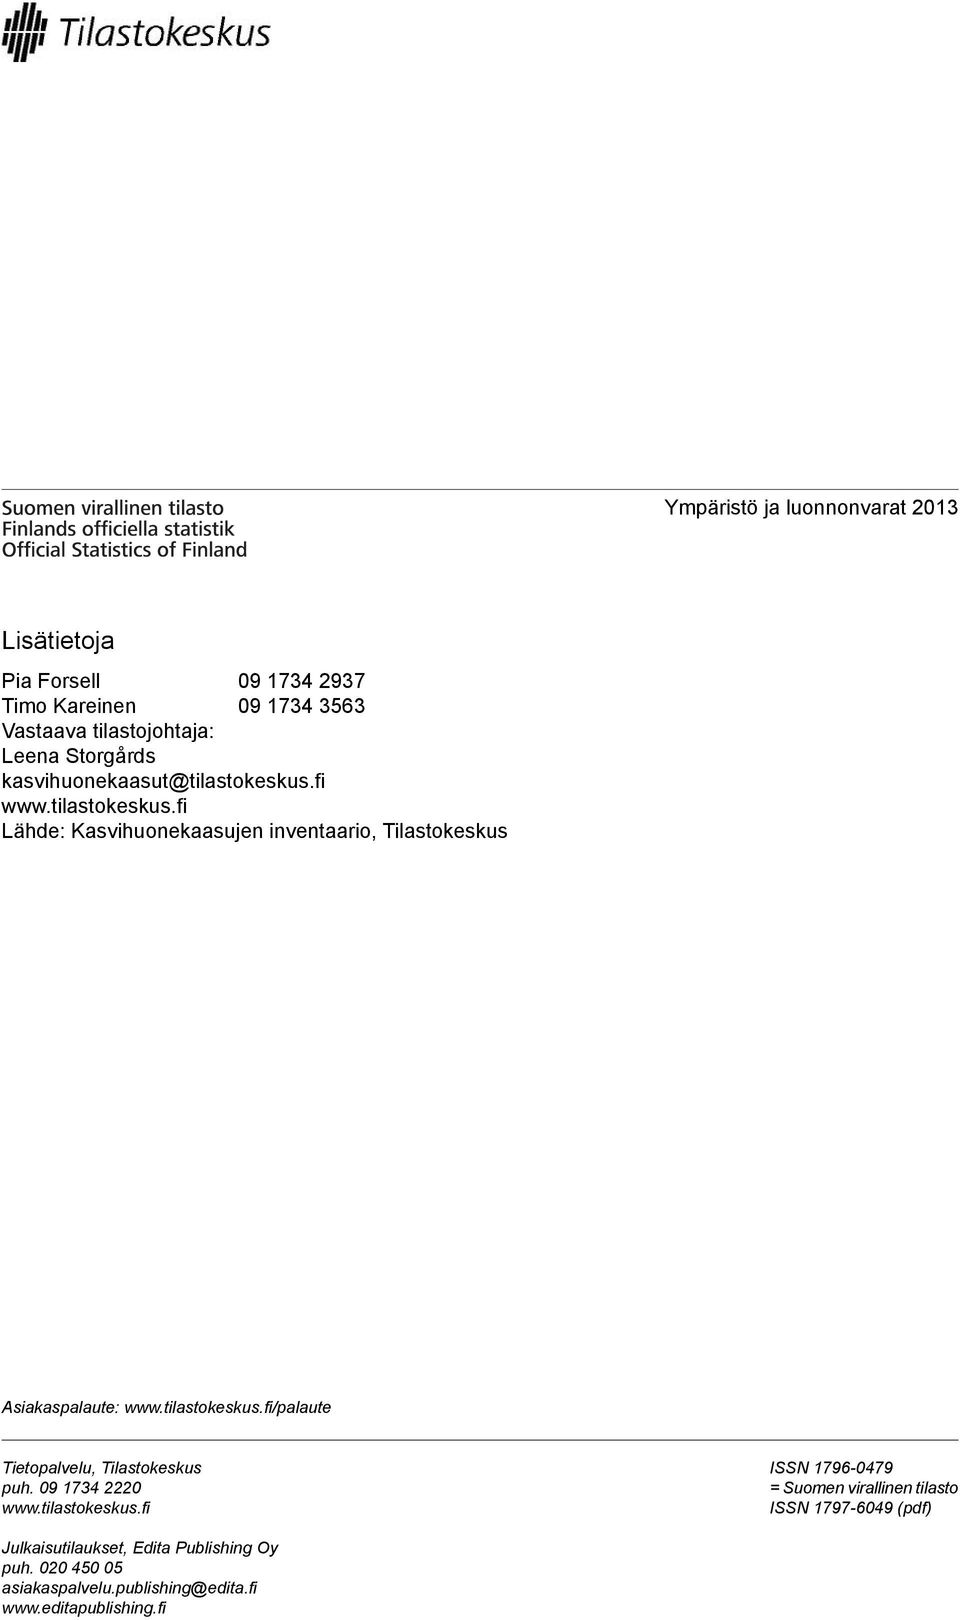 tilastokeskus.fi/palaute Tietopalvelu, Tilastokeskus puh. 09 1734 2220 www.tilastokeskus.fi ISSN 1796-0479 = Suomen virallinen tilasto ISSN 1797-6049 (pdf) Julkaisutilaukset, Edita Publishing Oy puh.